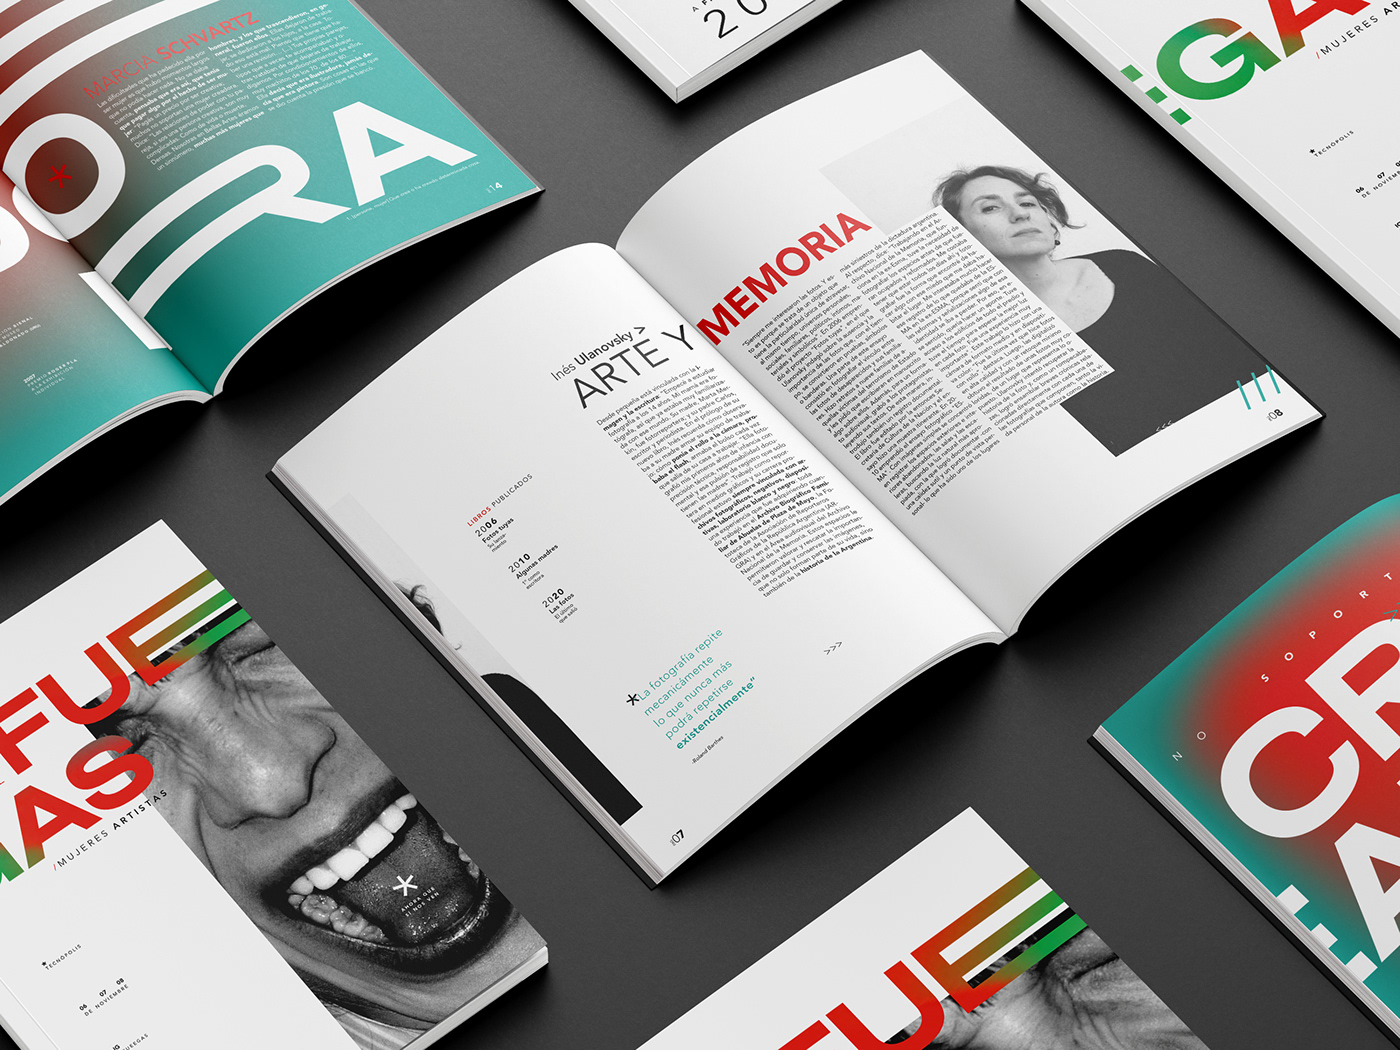 design tipografia venancio contreras uba fadu editorial revista magazine feminism book design